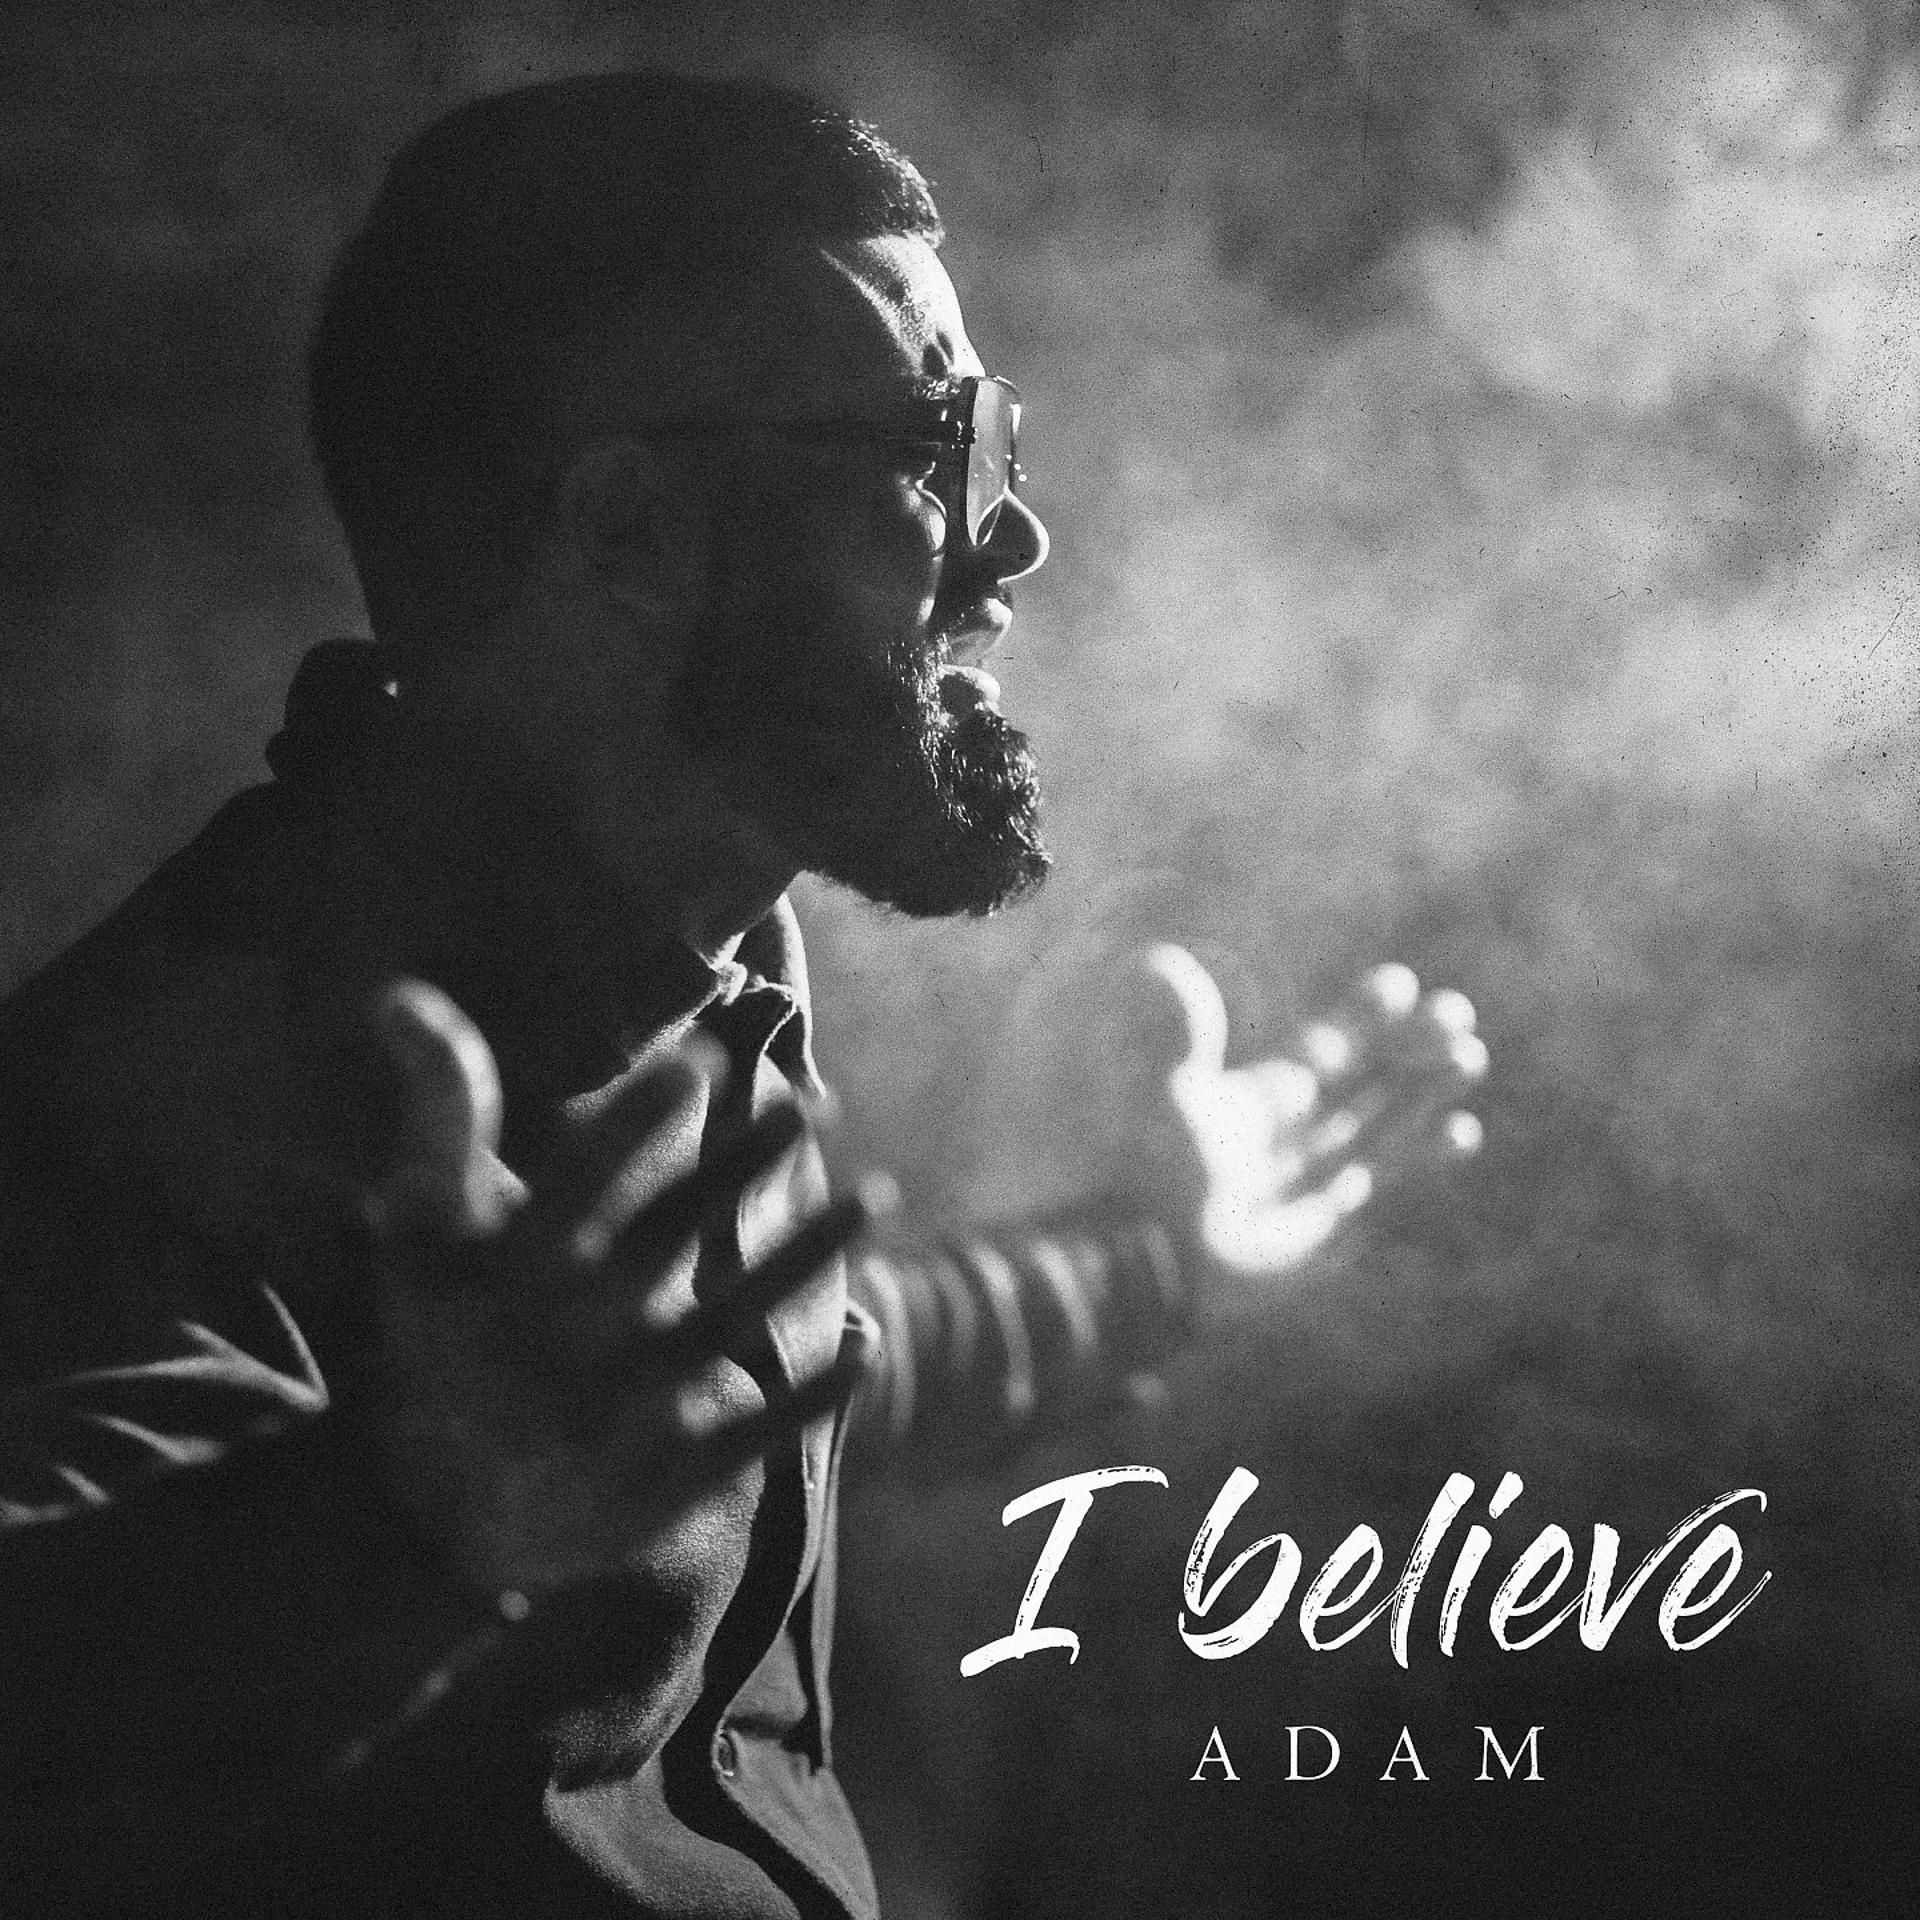 Zhurek isko alvarez remix mp3. Adam i believe. Believe певец. Adam zhurek певец.